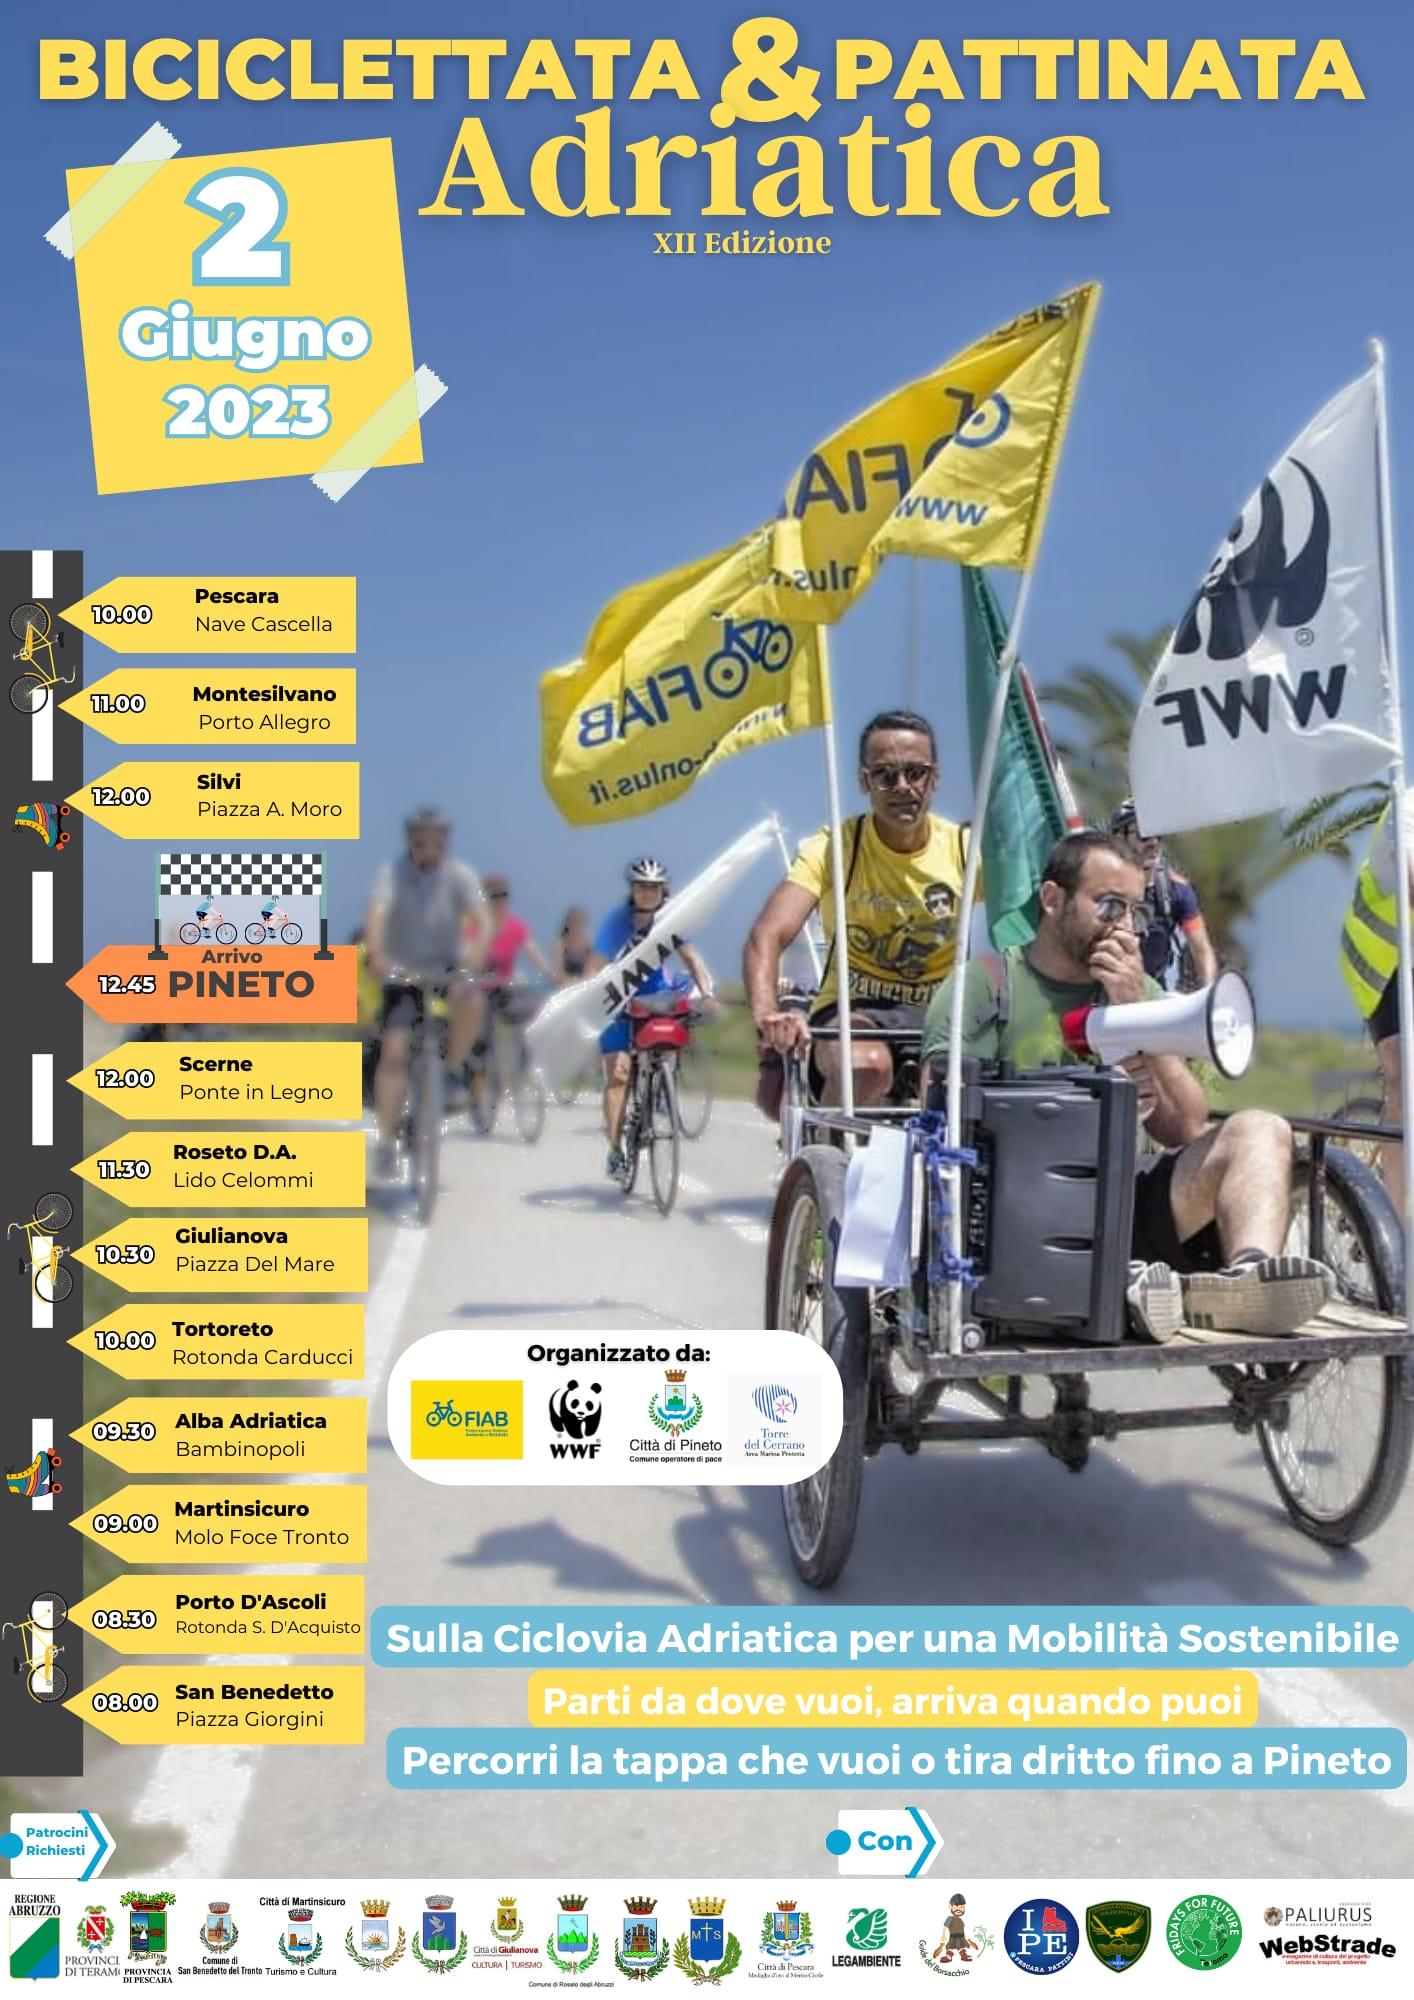 Biciclettata & Pattinata Adriatica edizione 2023 – Annuale – 2 e 3 Giugno – PPUG